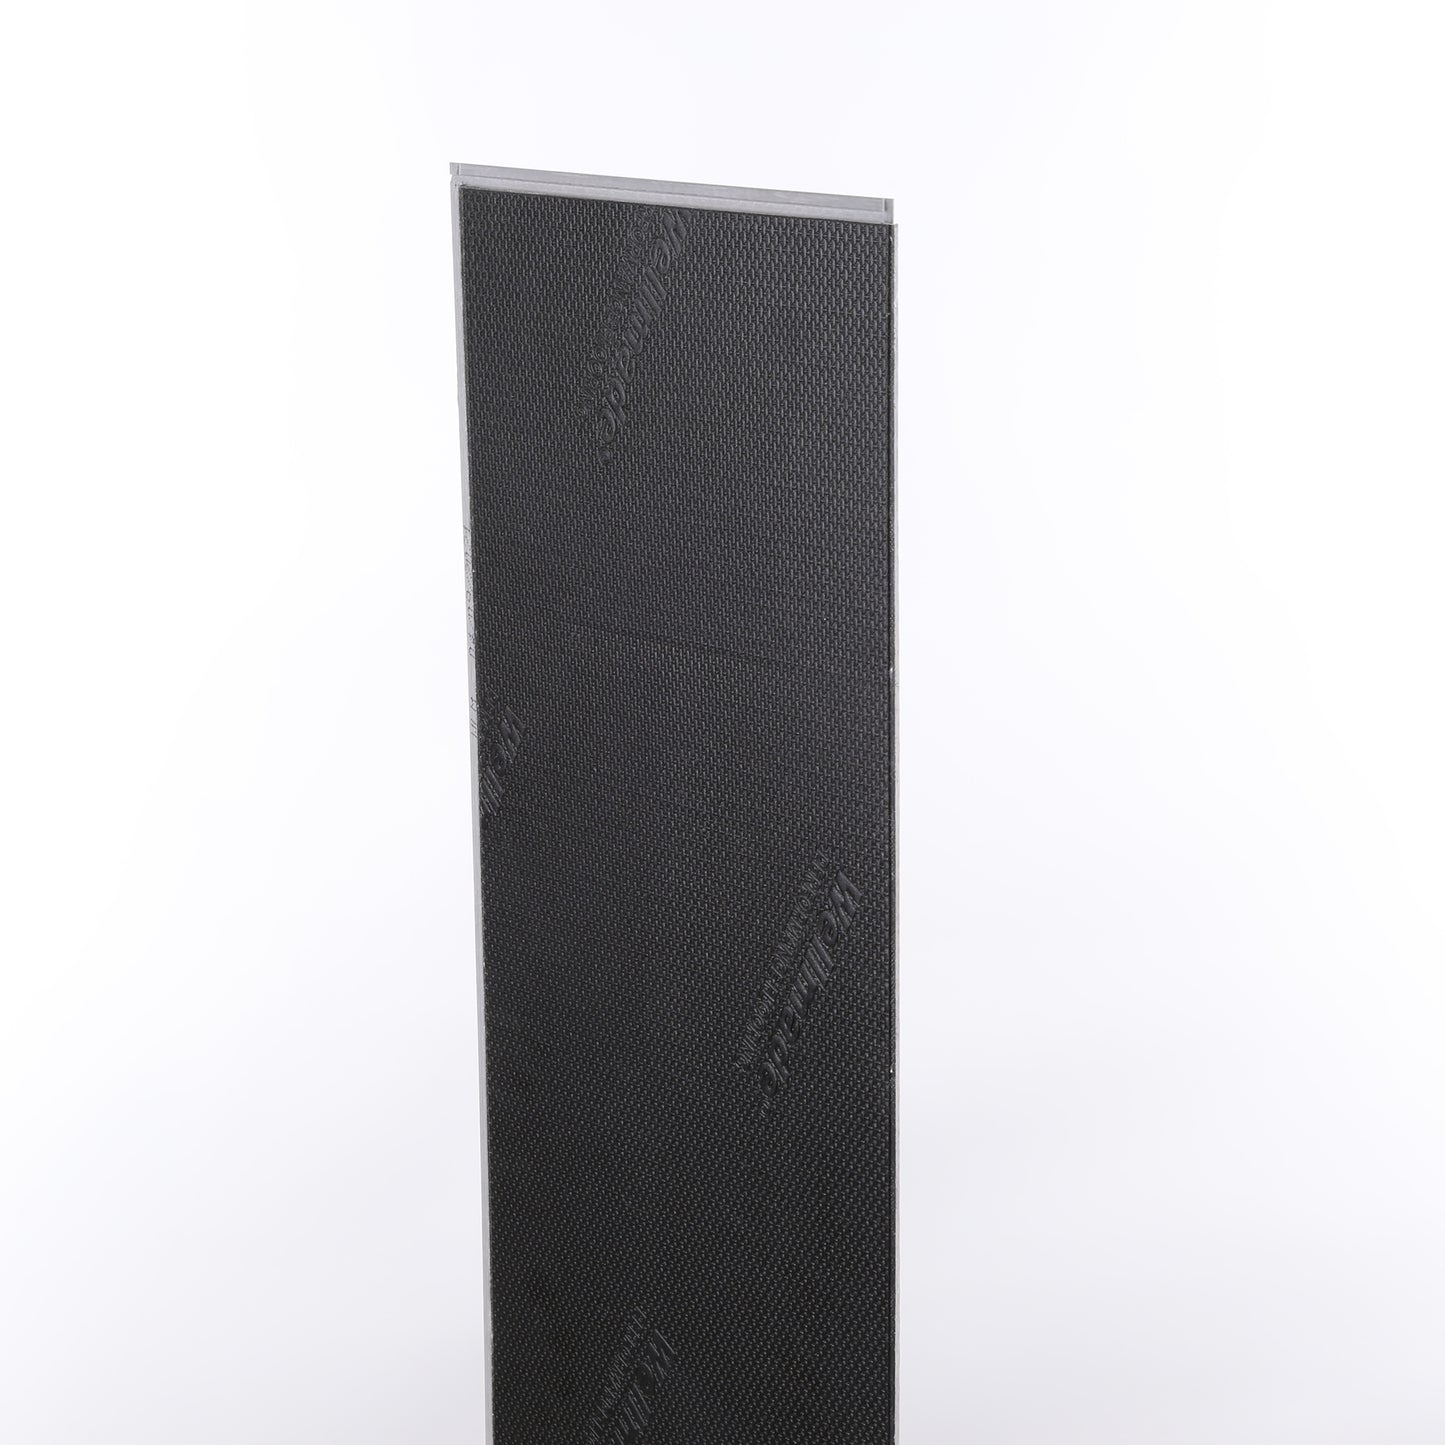 5mm Frosted Oak HDPC® Waterproof Luxury Vinyl Plank Flooring 7.20 in. Wide x 60 in. Long